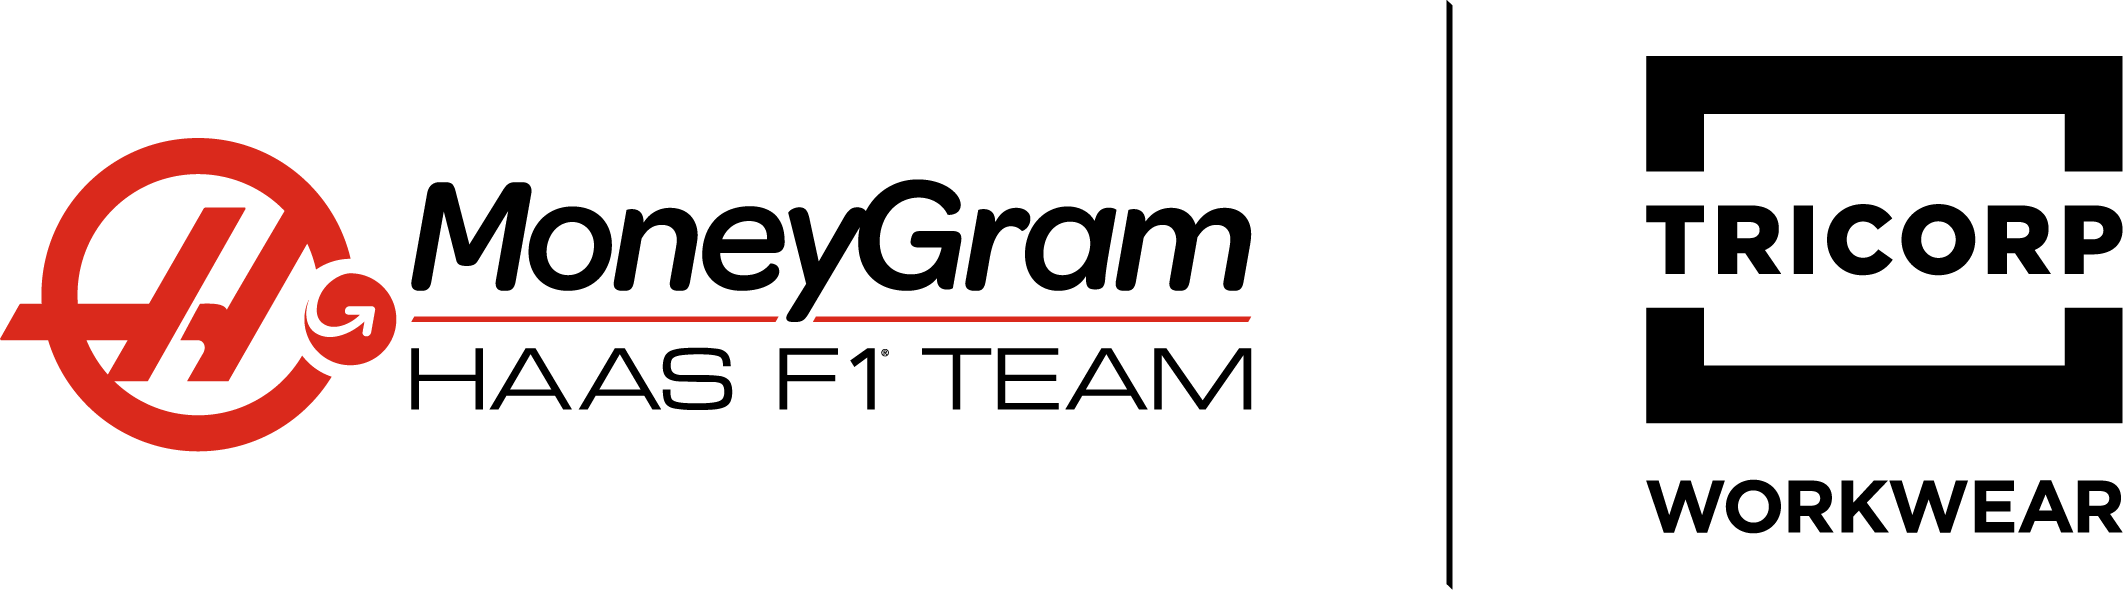 MoneyGram Haas F1 Team Merchandise Gear Up Like a True Fan